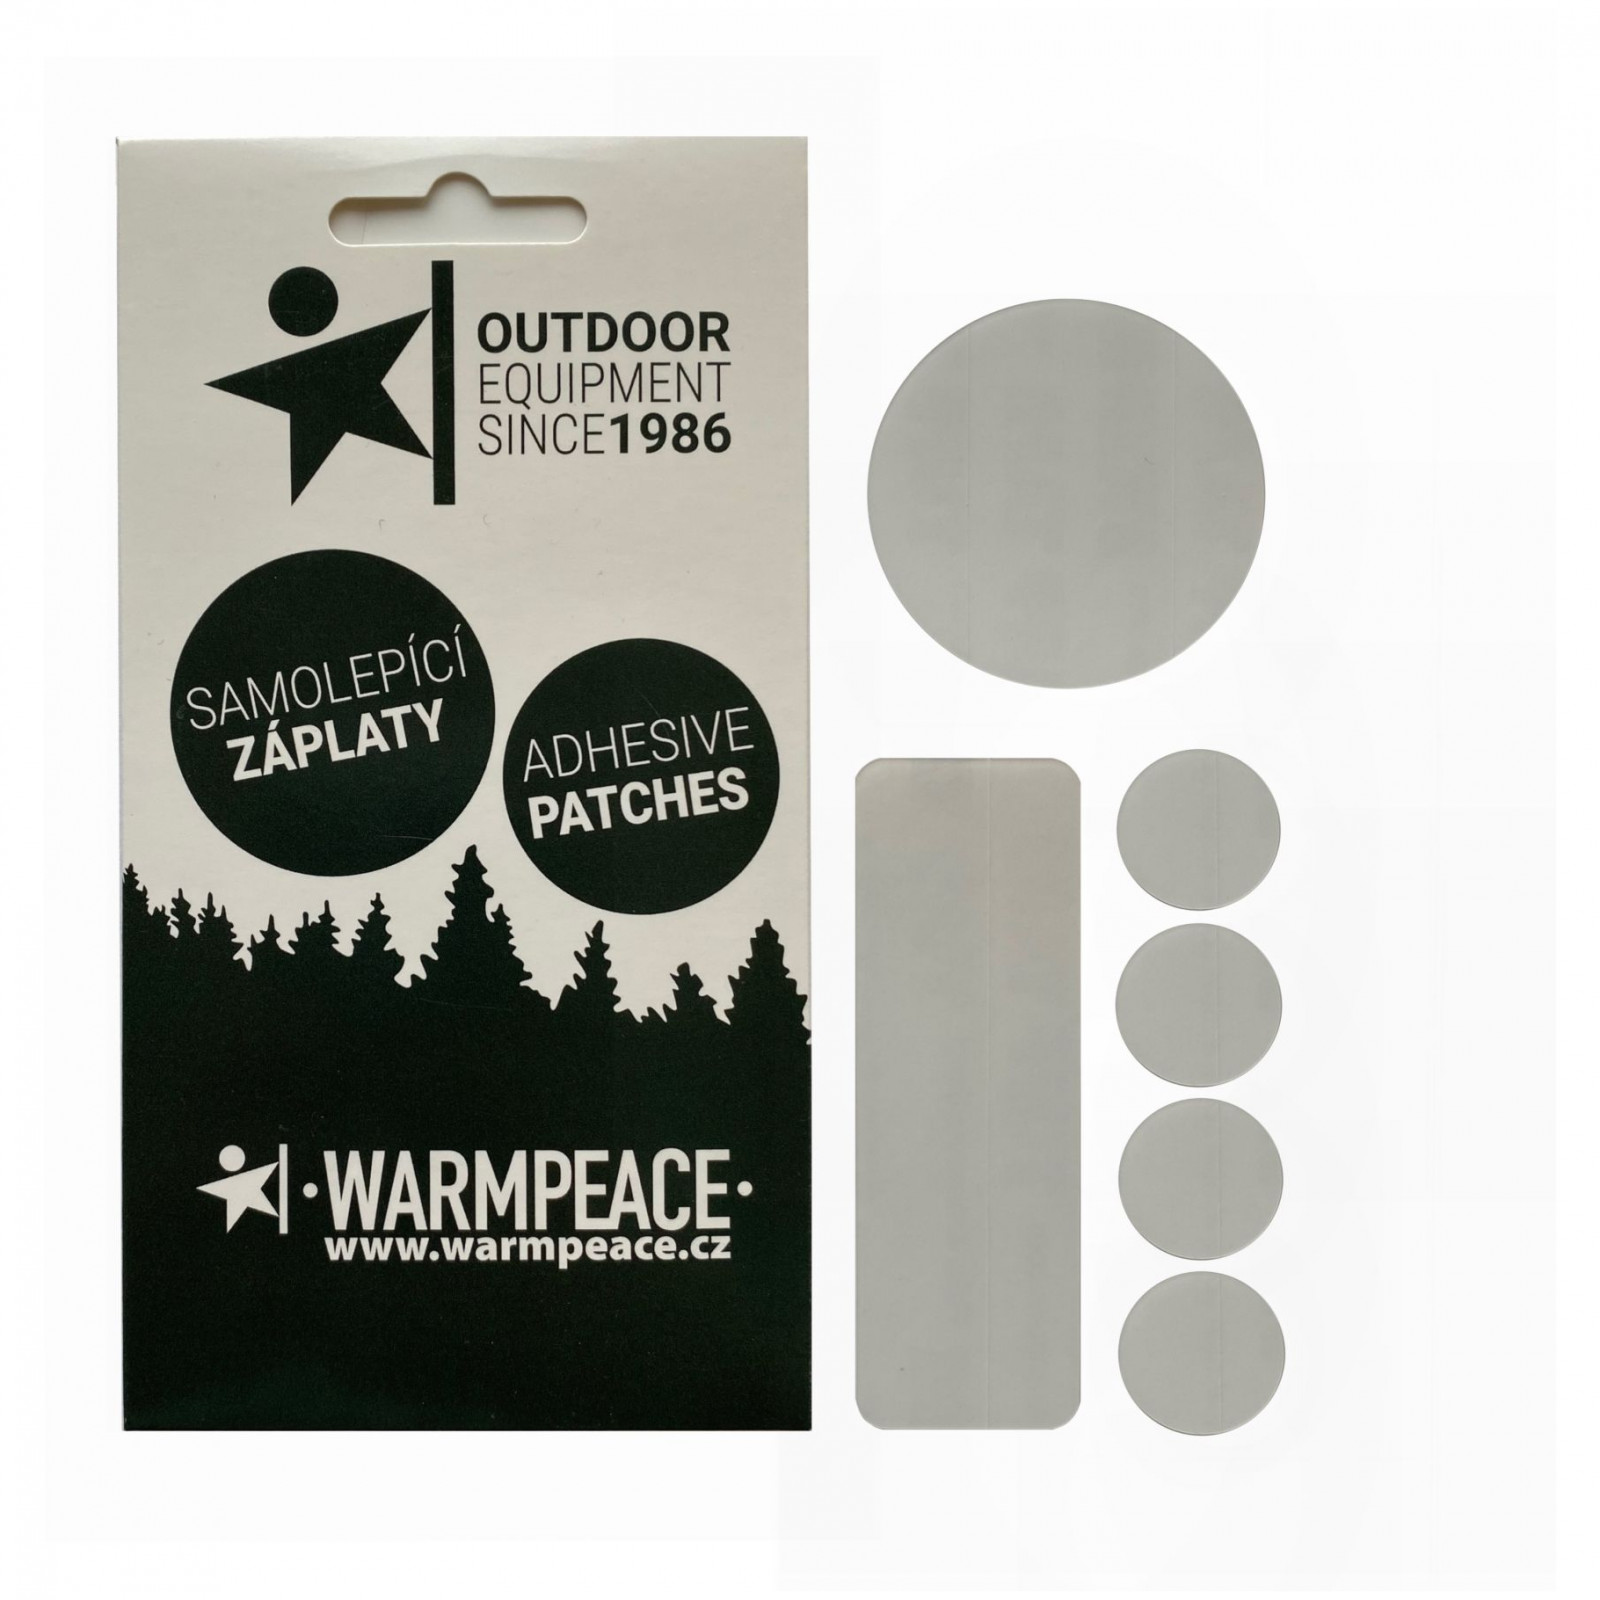 Samolepící záplaty Warmpeace Self Adhesive Patch mix 6 ks